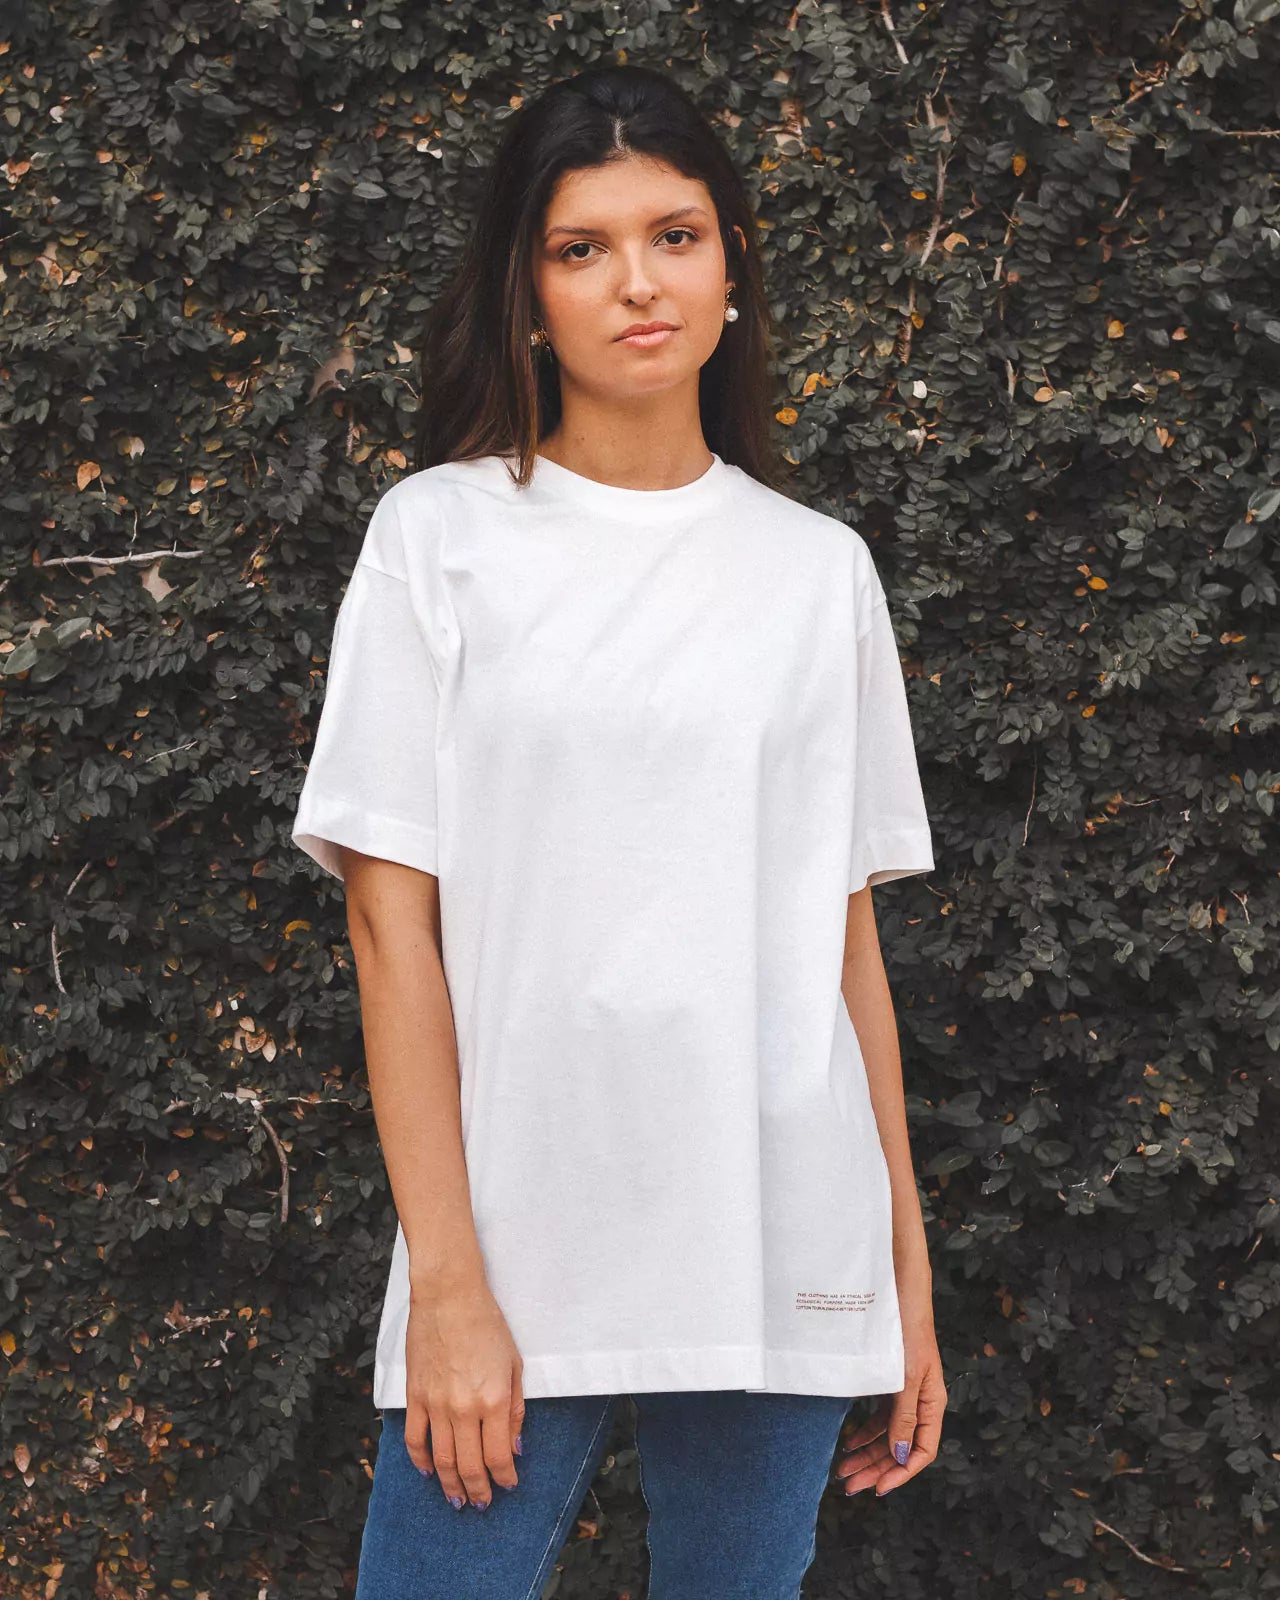 T-shirt Oversized de Algodão Orgânico Branca Off White. Compre online moda sustentável e atemporal na Minimadeia. Roupas femininas estilosas, básicas e sustentáveis. Foto produto 01